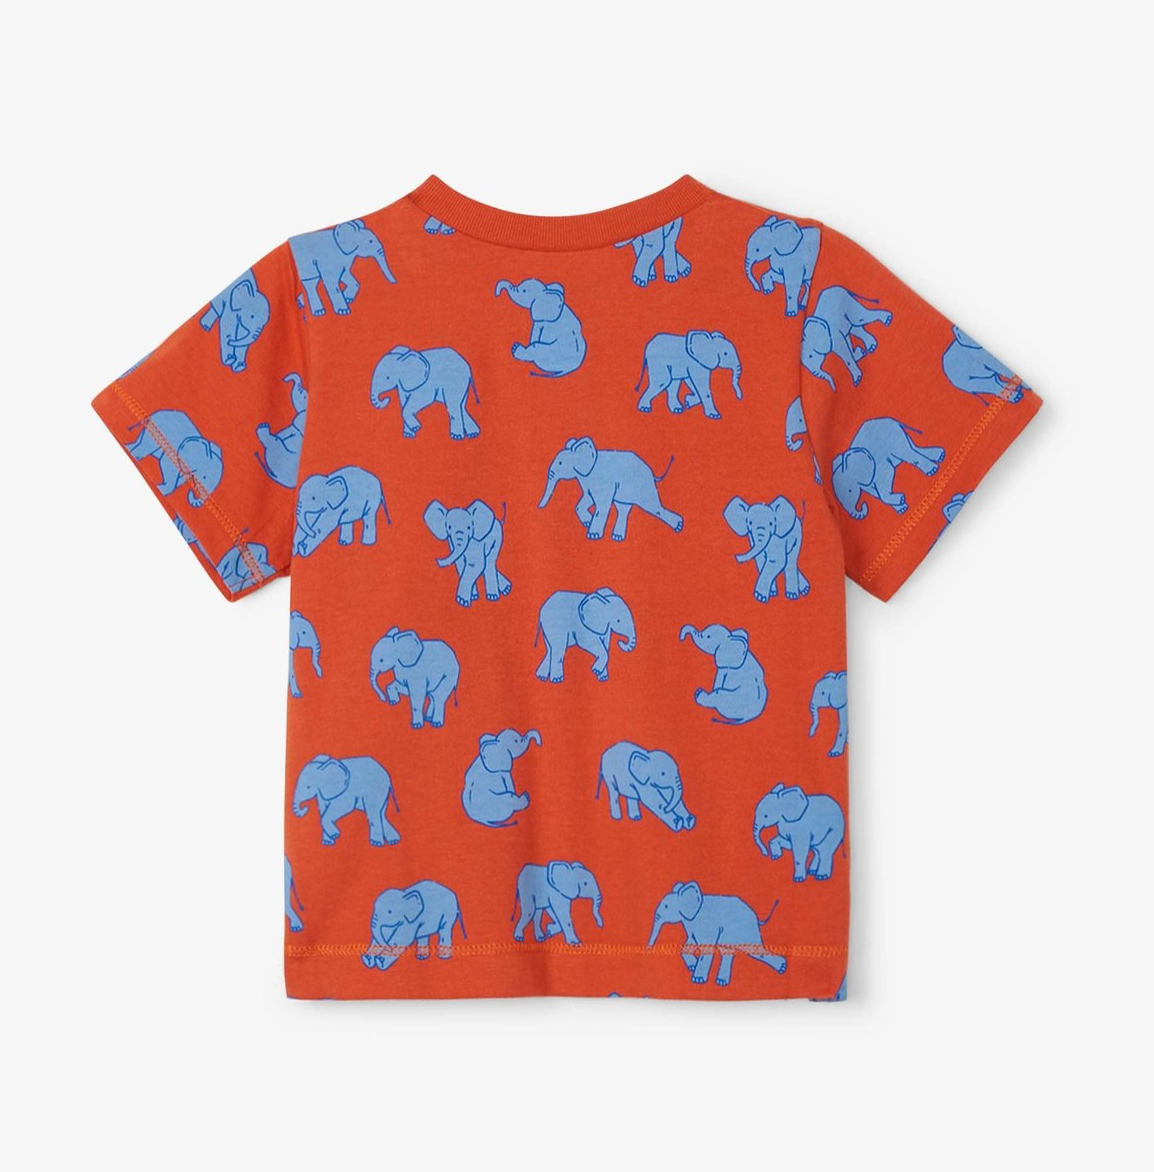 Dancing Elephants Baby Graphic Tee